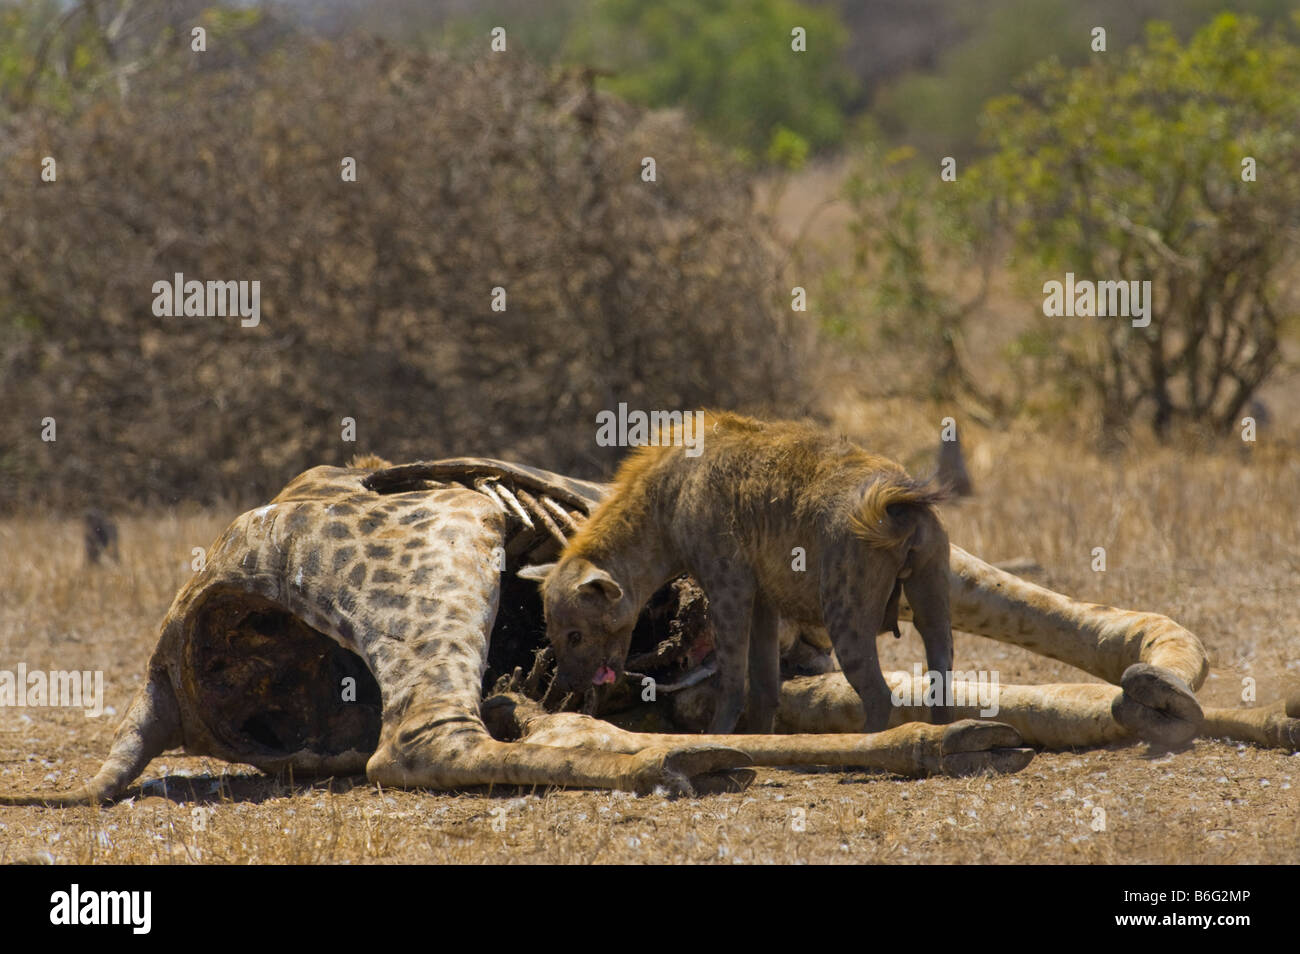 L'Hyène tachetée sauvage de la faune la charogne de manger au sud-Afrika afrique du sud alimentation alimentation alimentation charognard charognards girafe eater feede Banque D'Images